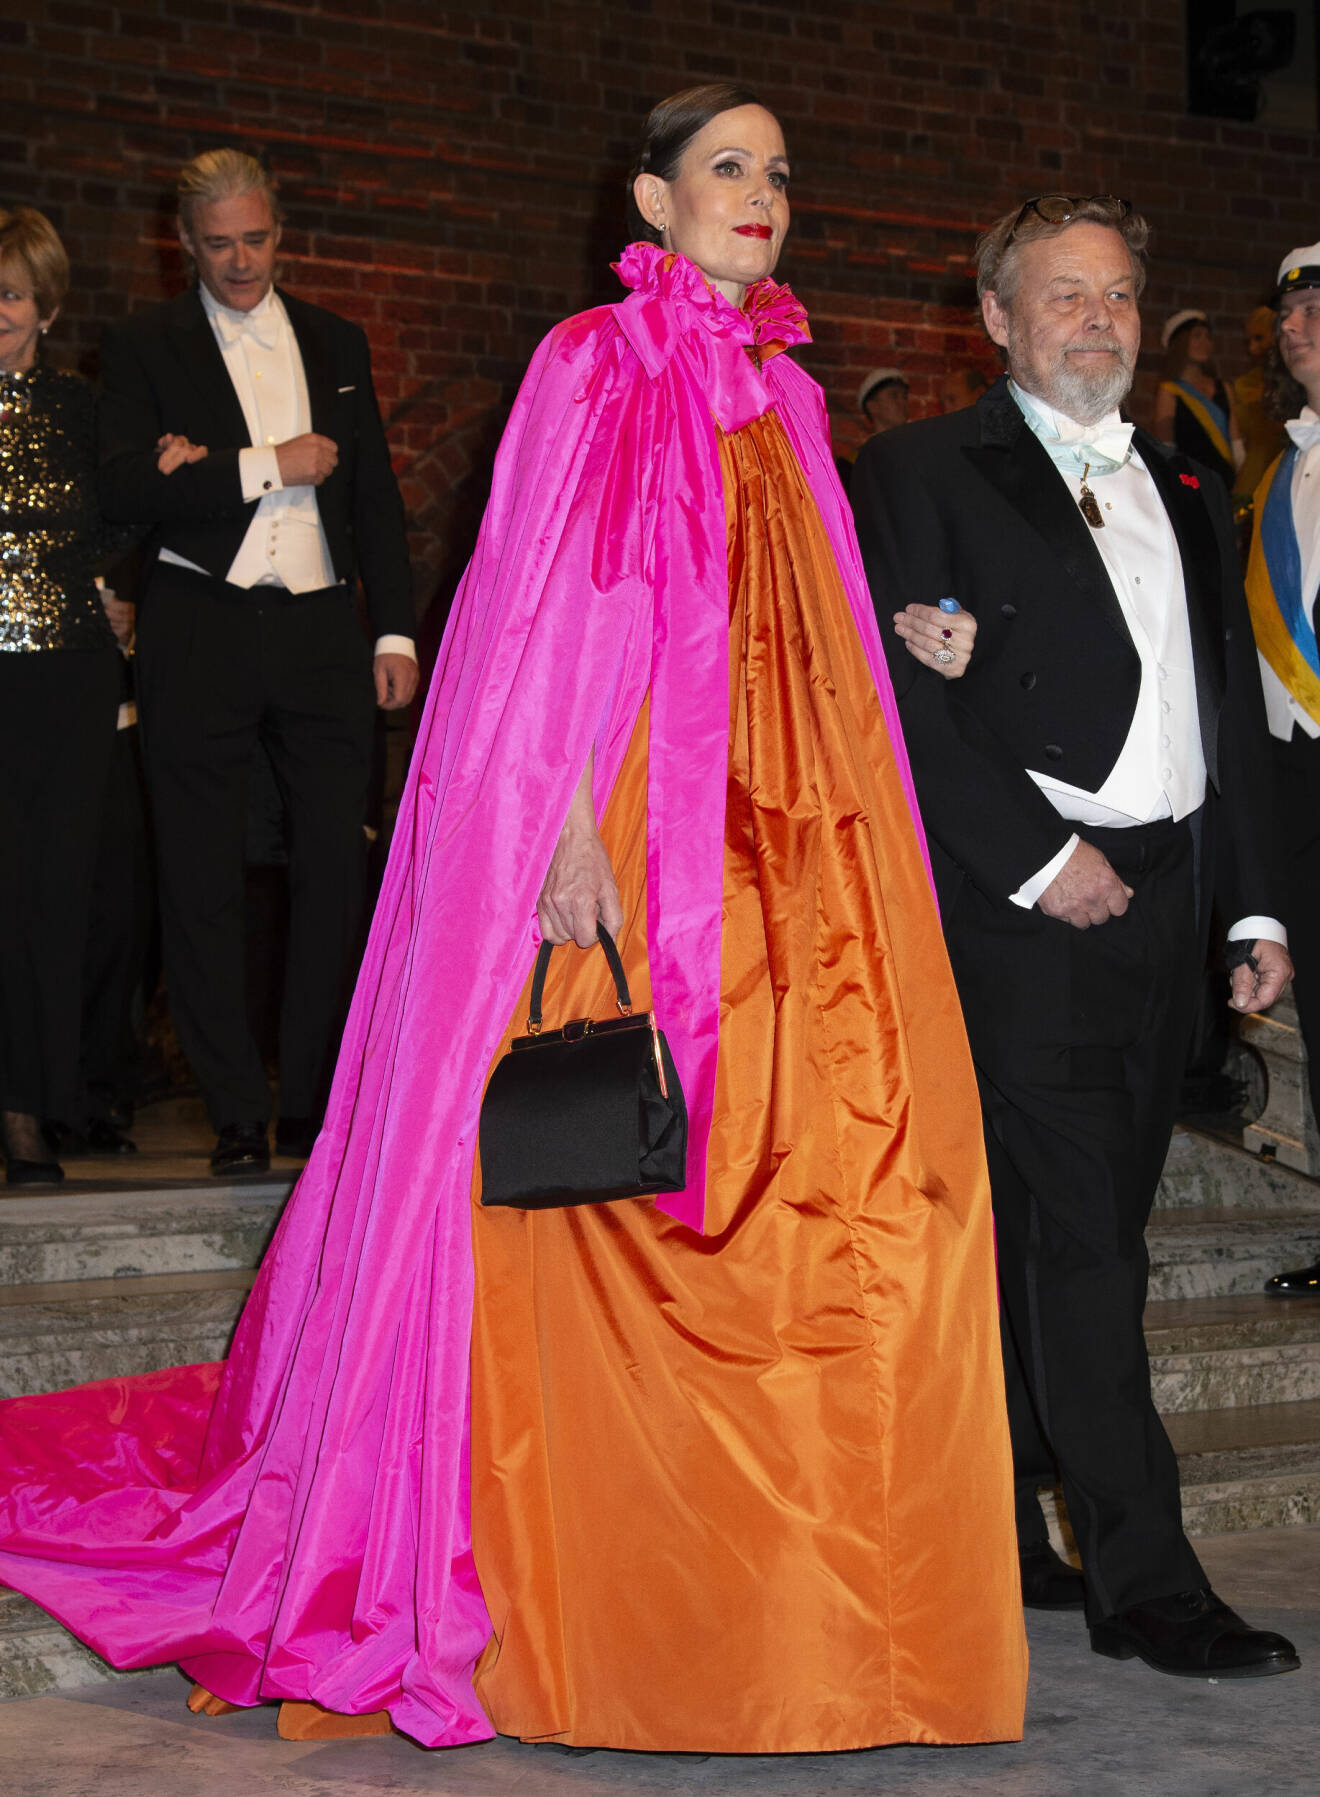 Sara Danius anländer till Nobelfesten 2018 i en färgstark och pampig klänning.